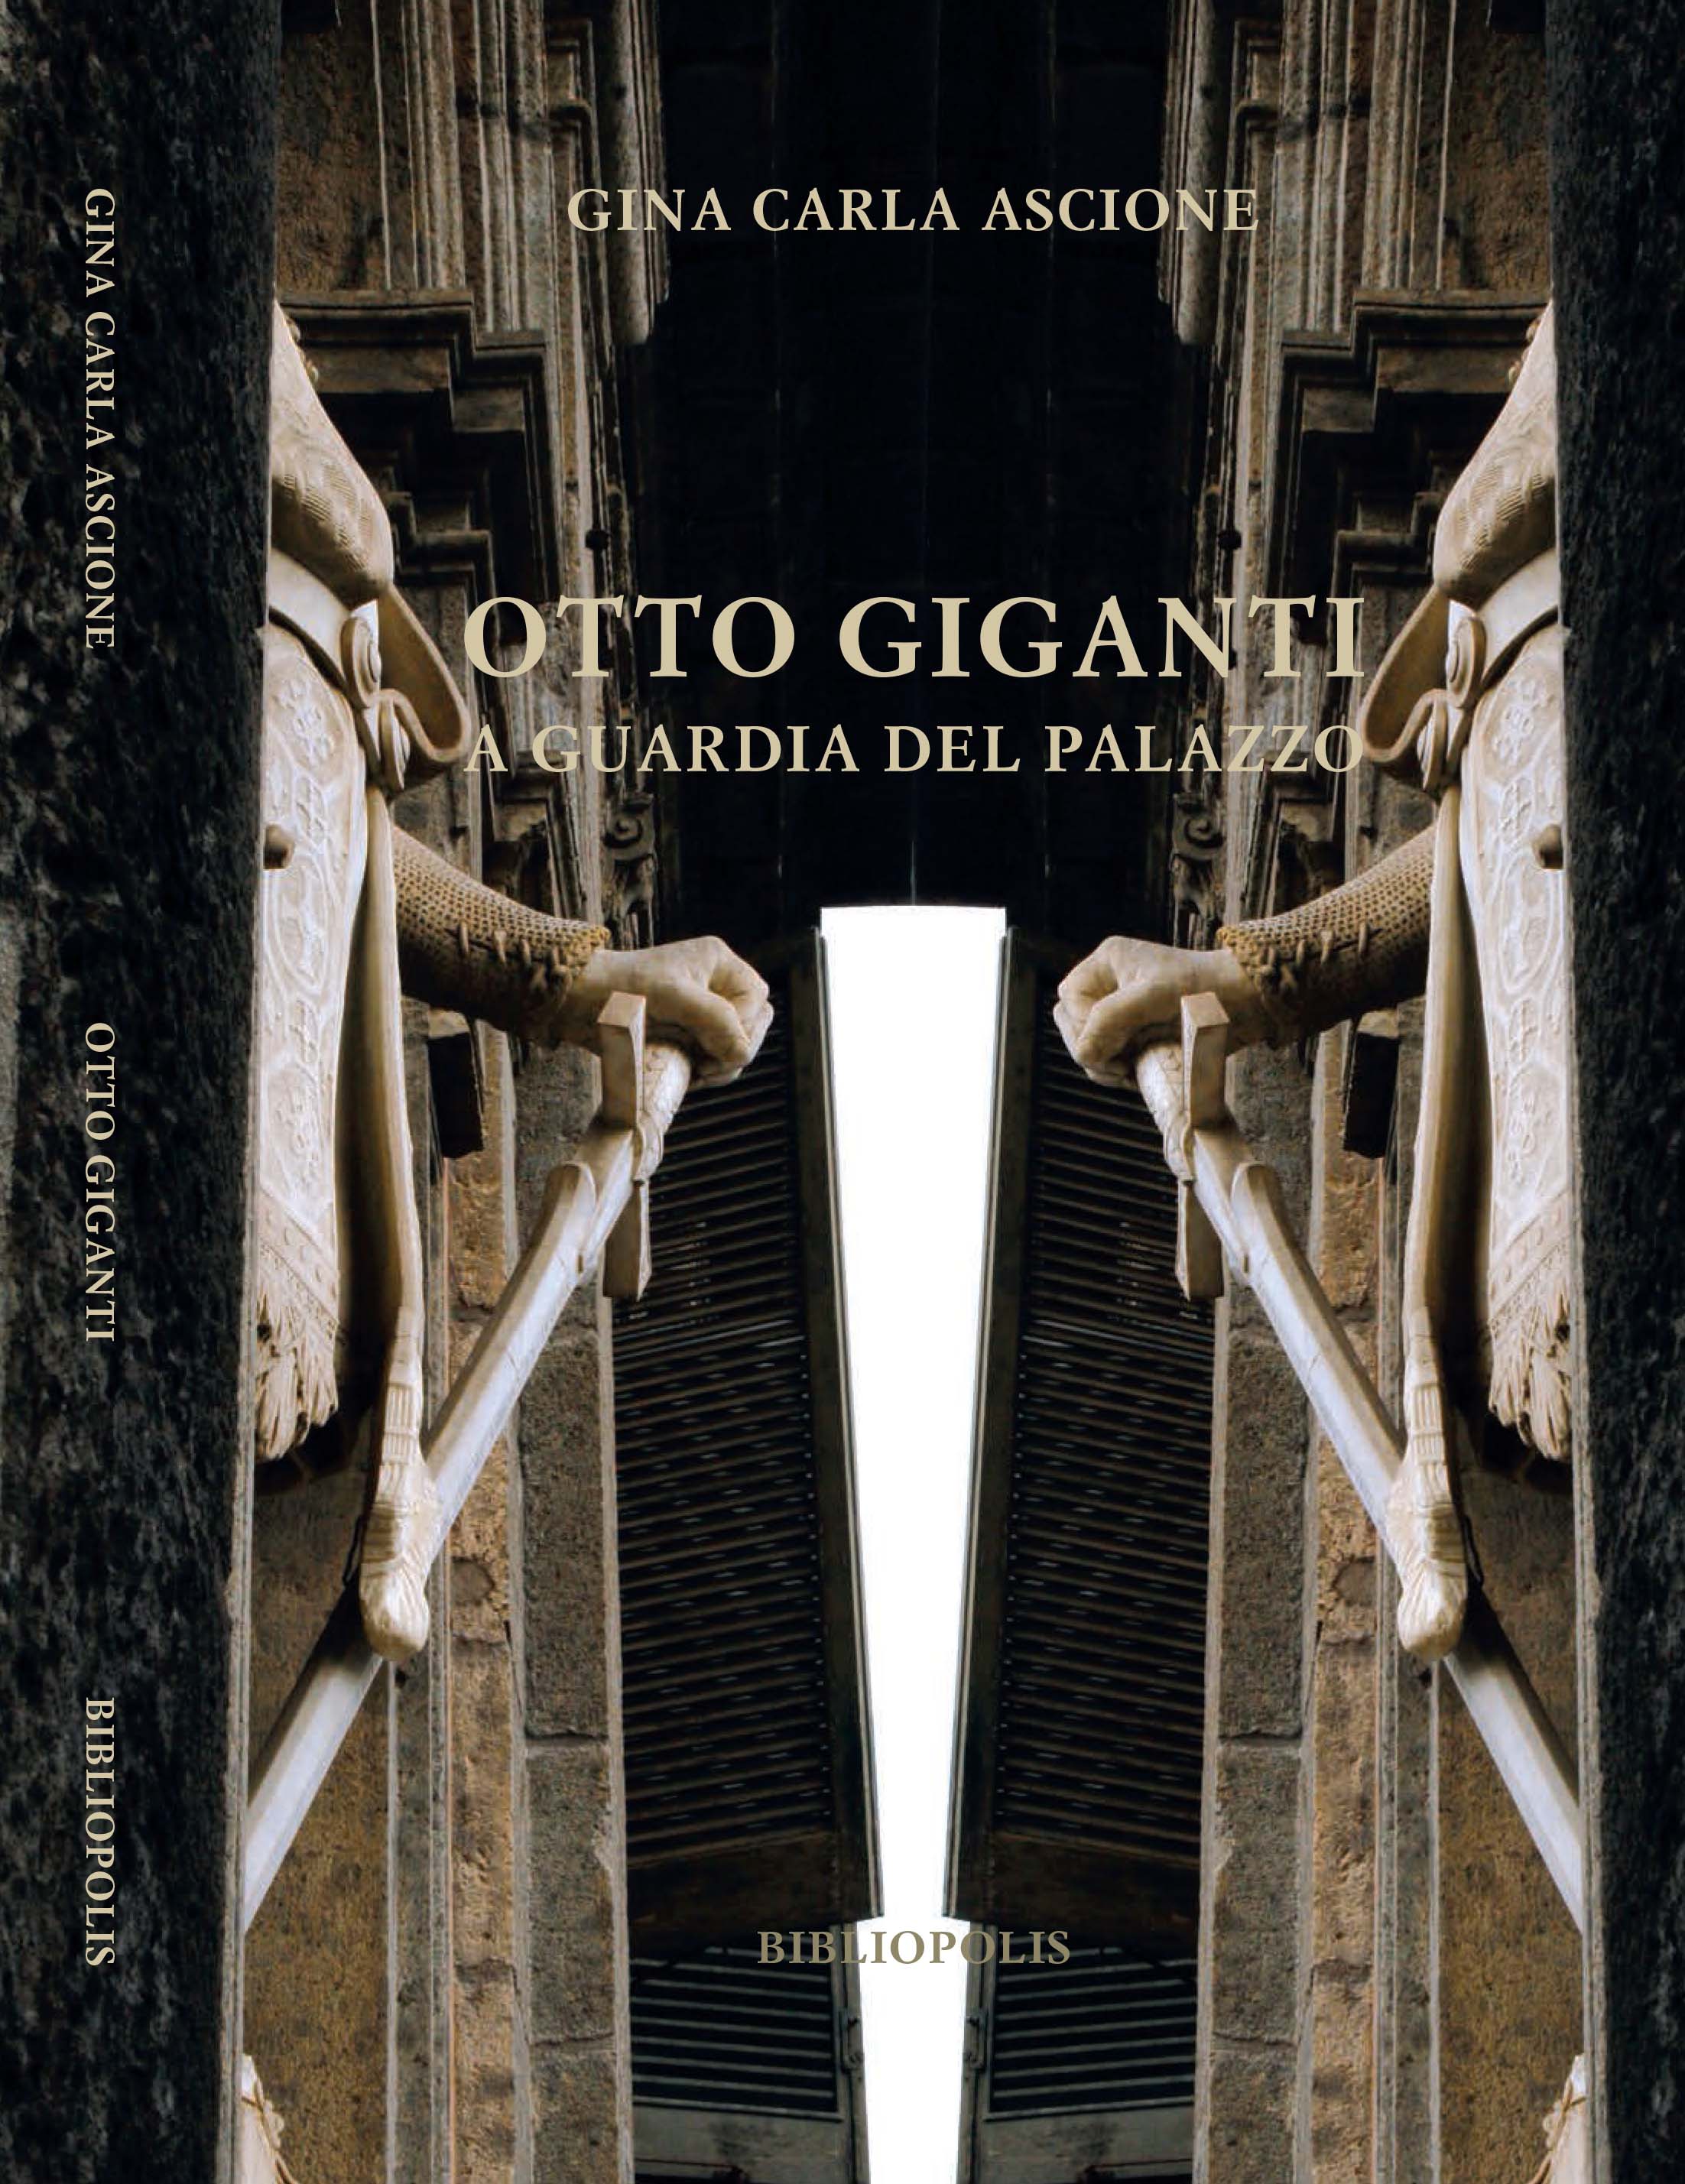  Presentazione del libro “otto giganti a guardia del palazzo” di Gina Carla Ascione